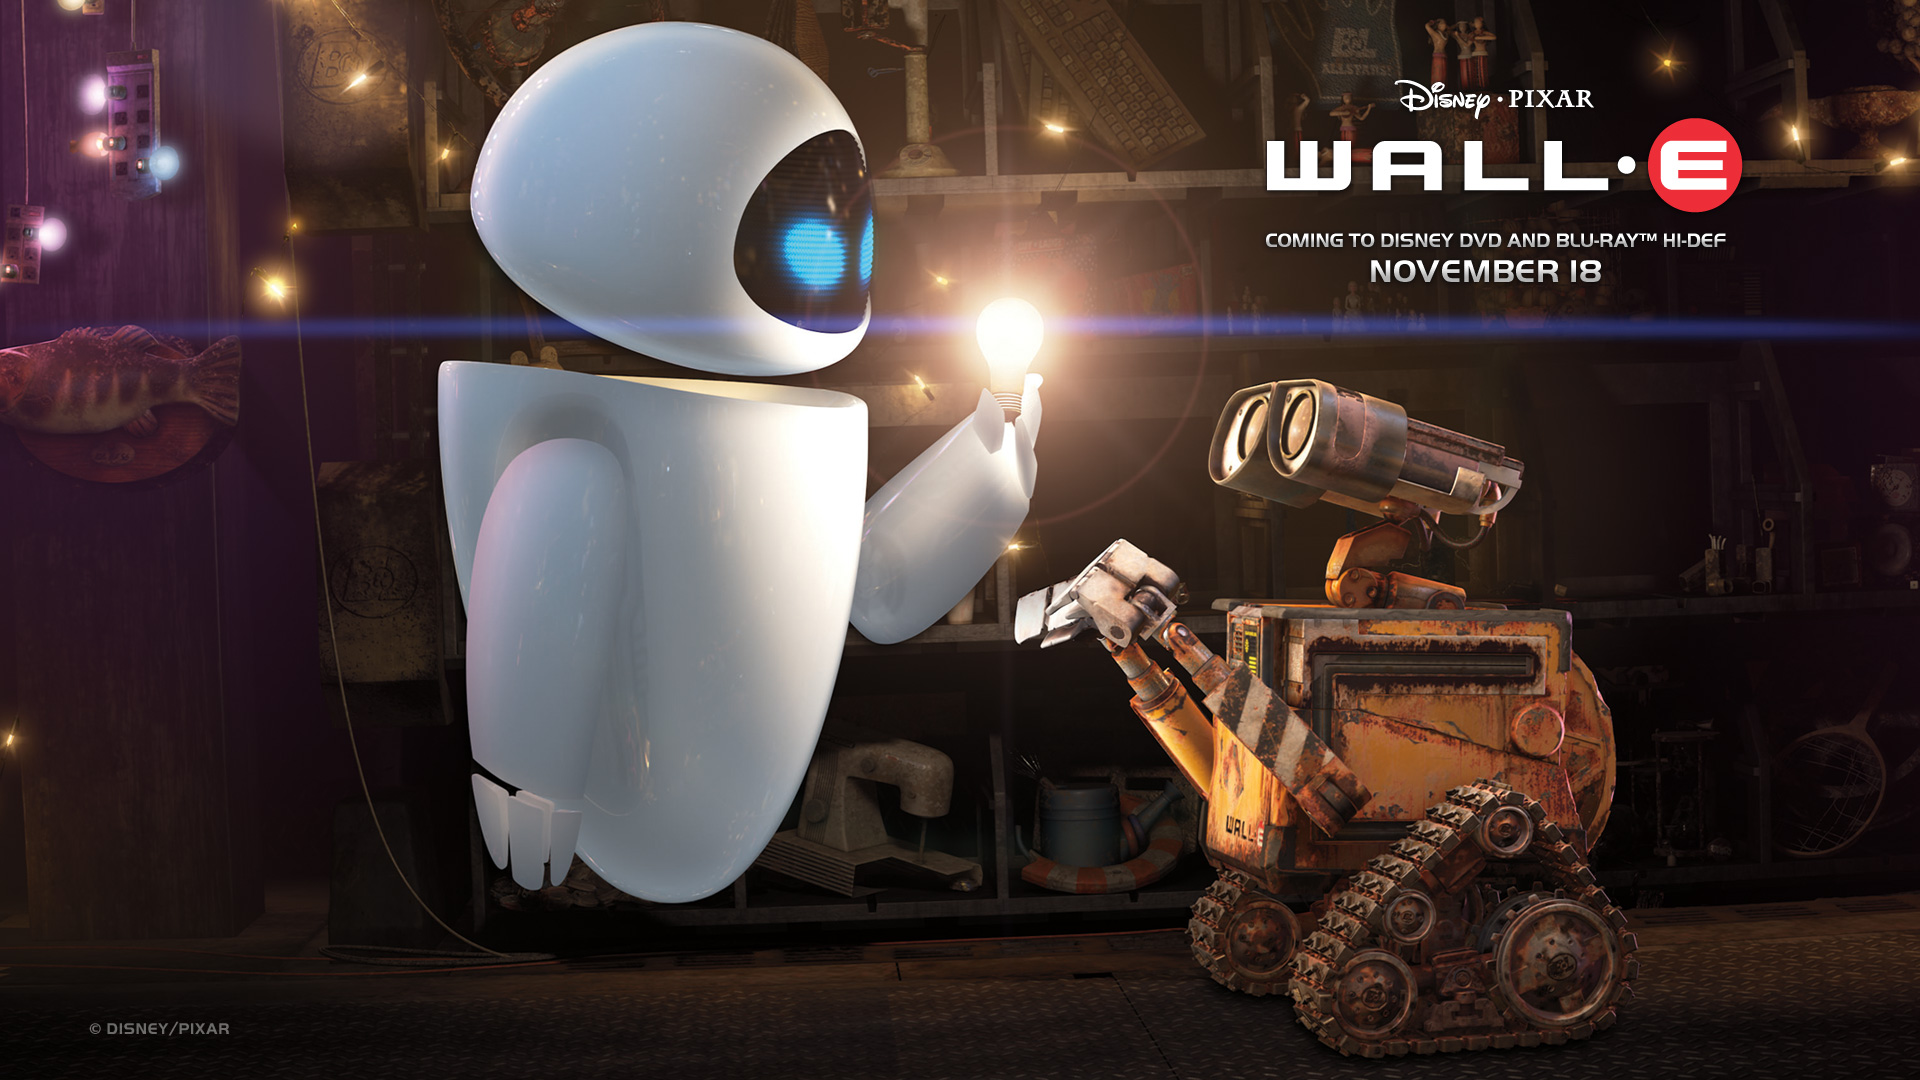 WALL-E показал лампочку EVE HD фото картинки, обои рабочий стол